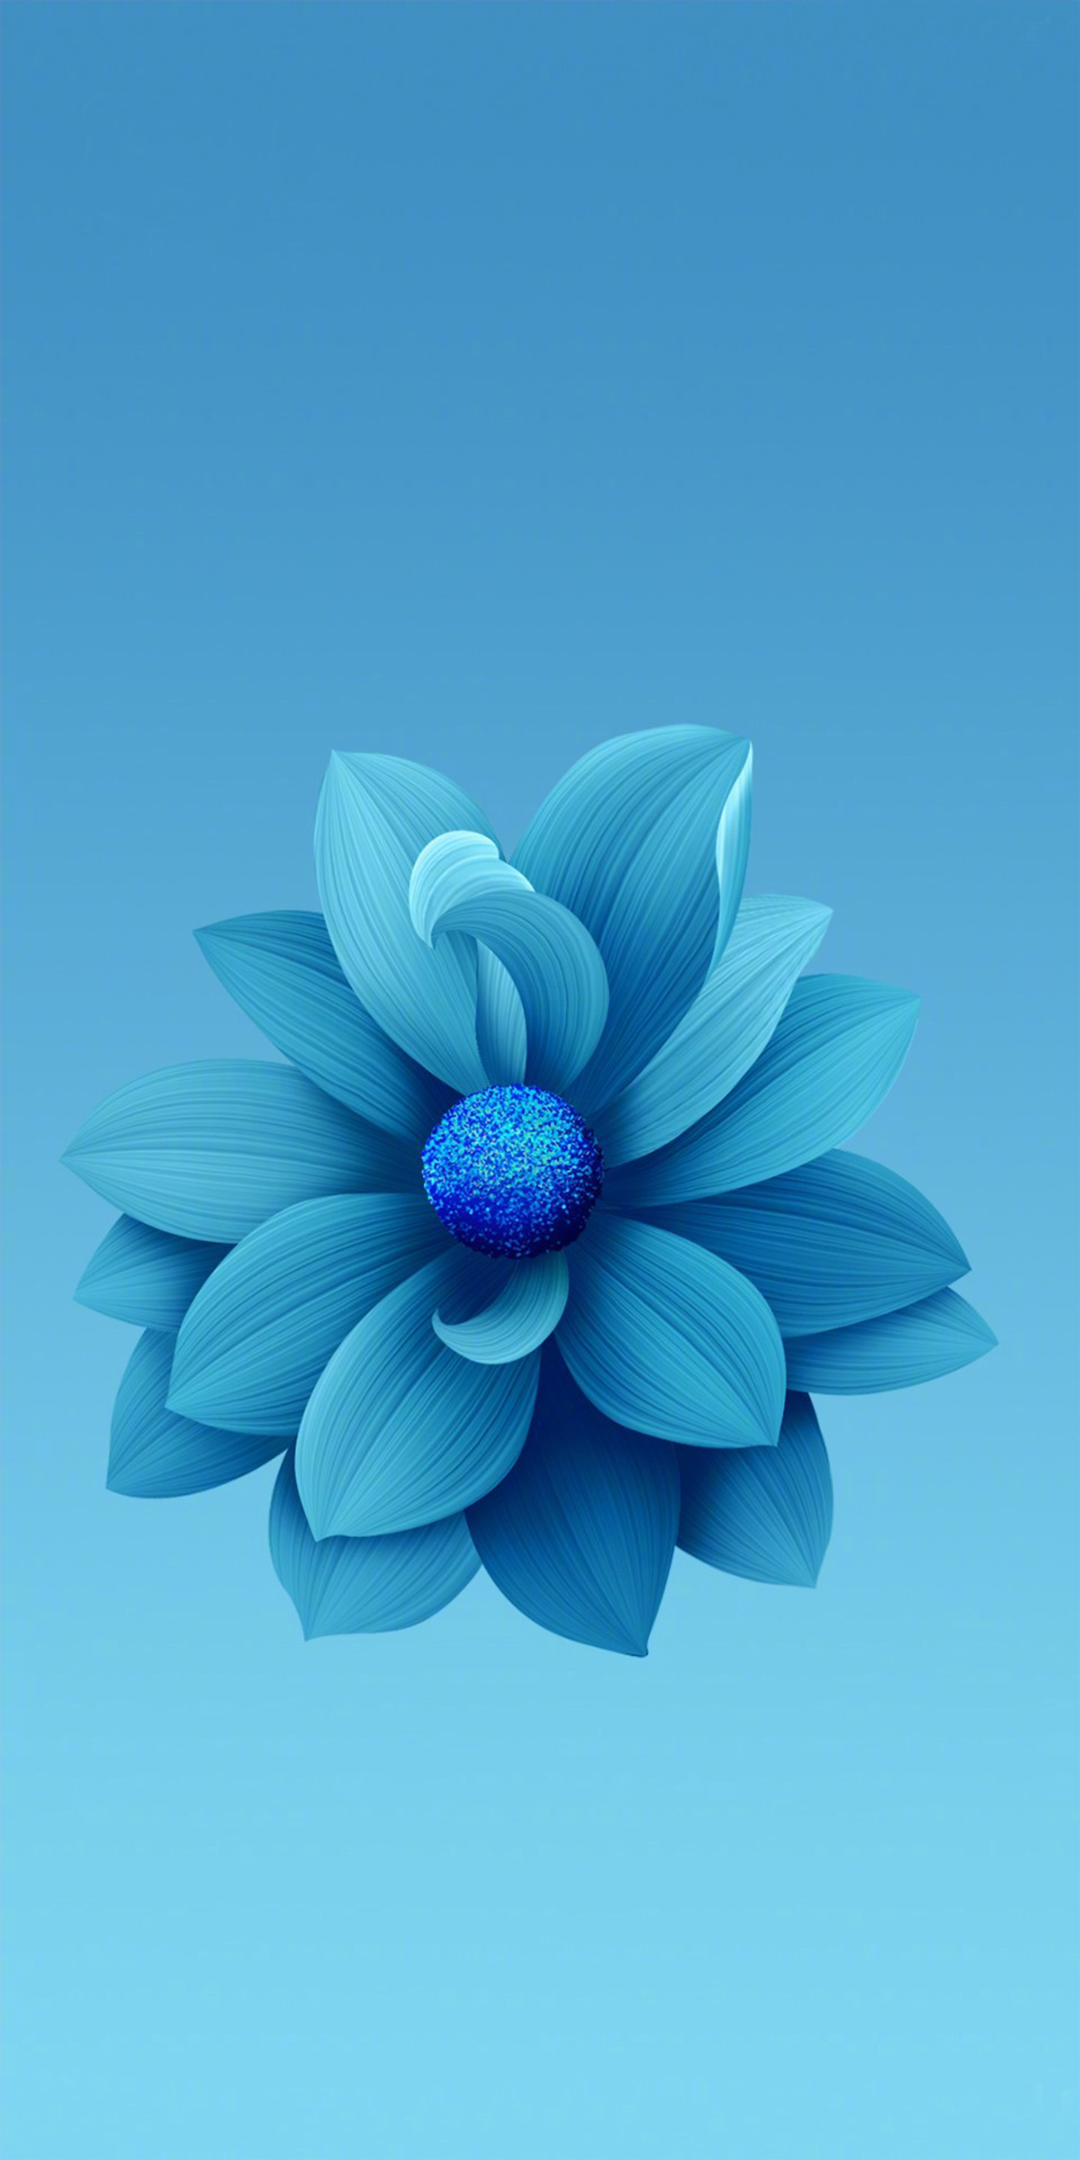 小米6x冰川蓝花朵内置壁纸